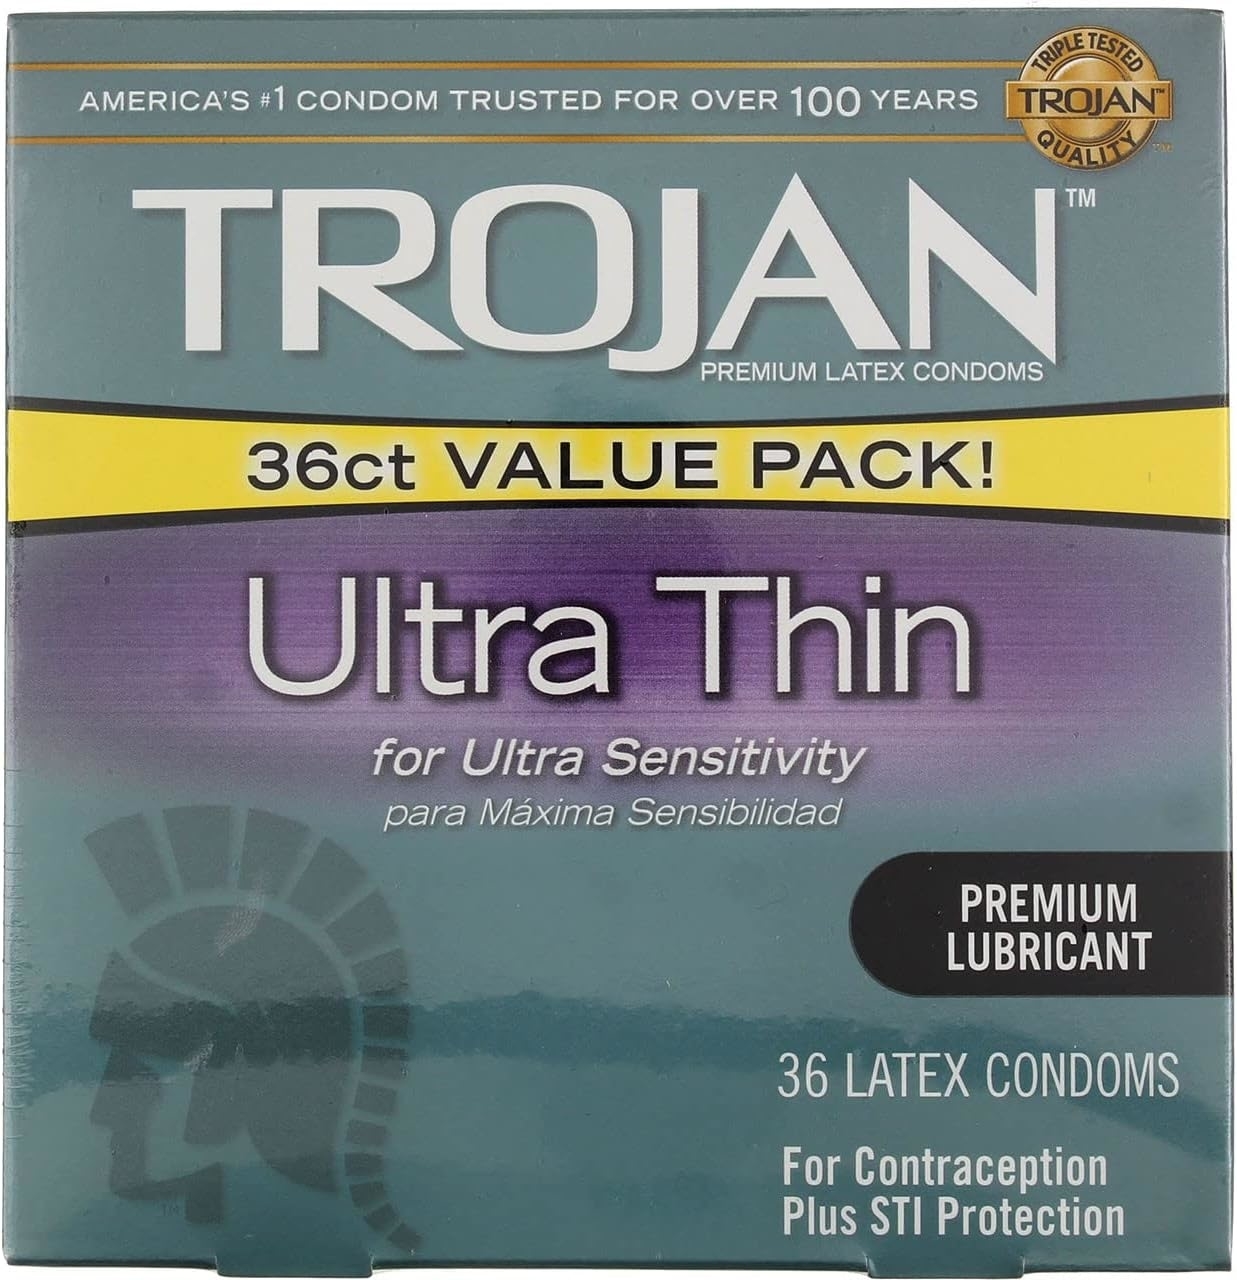 Trojan Ultra Thin condoms label